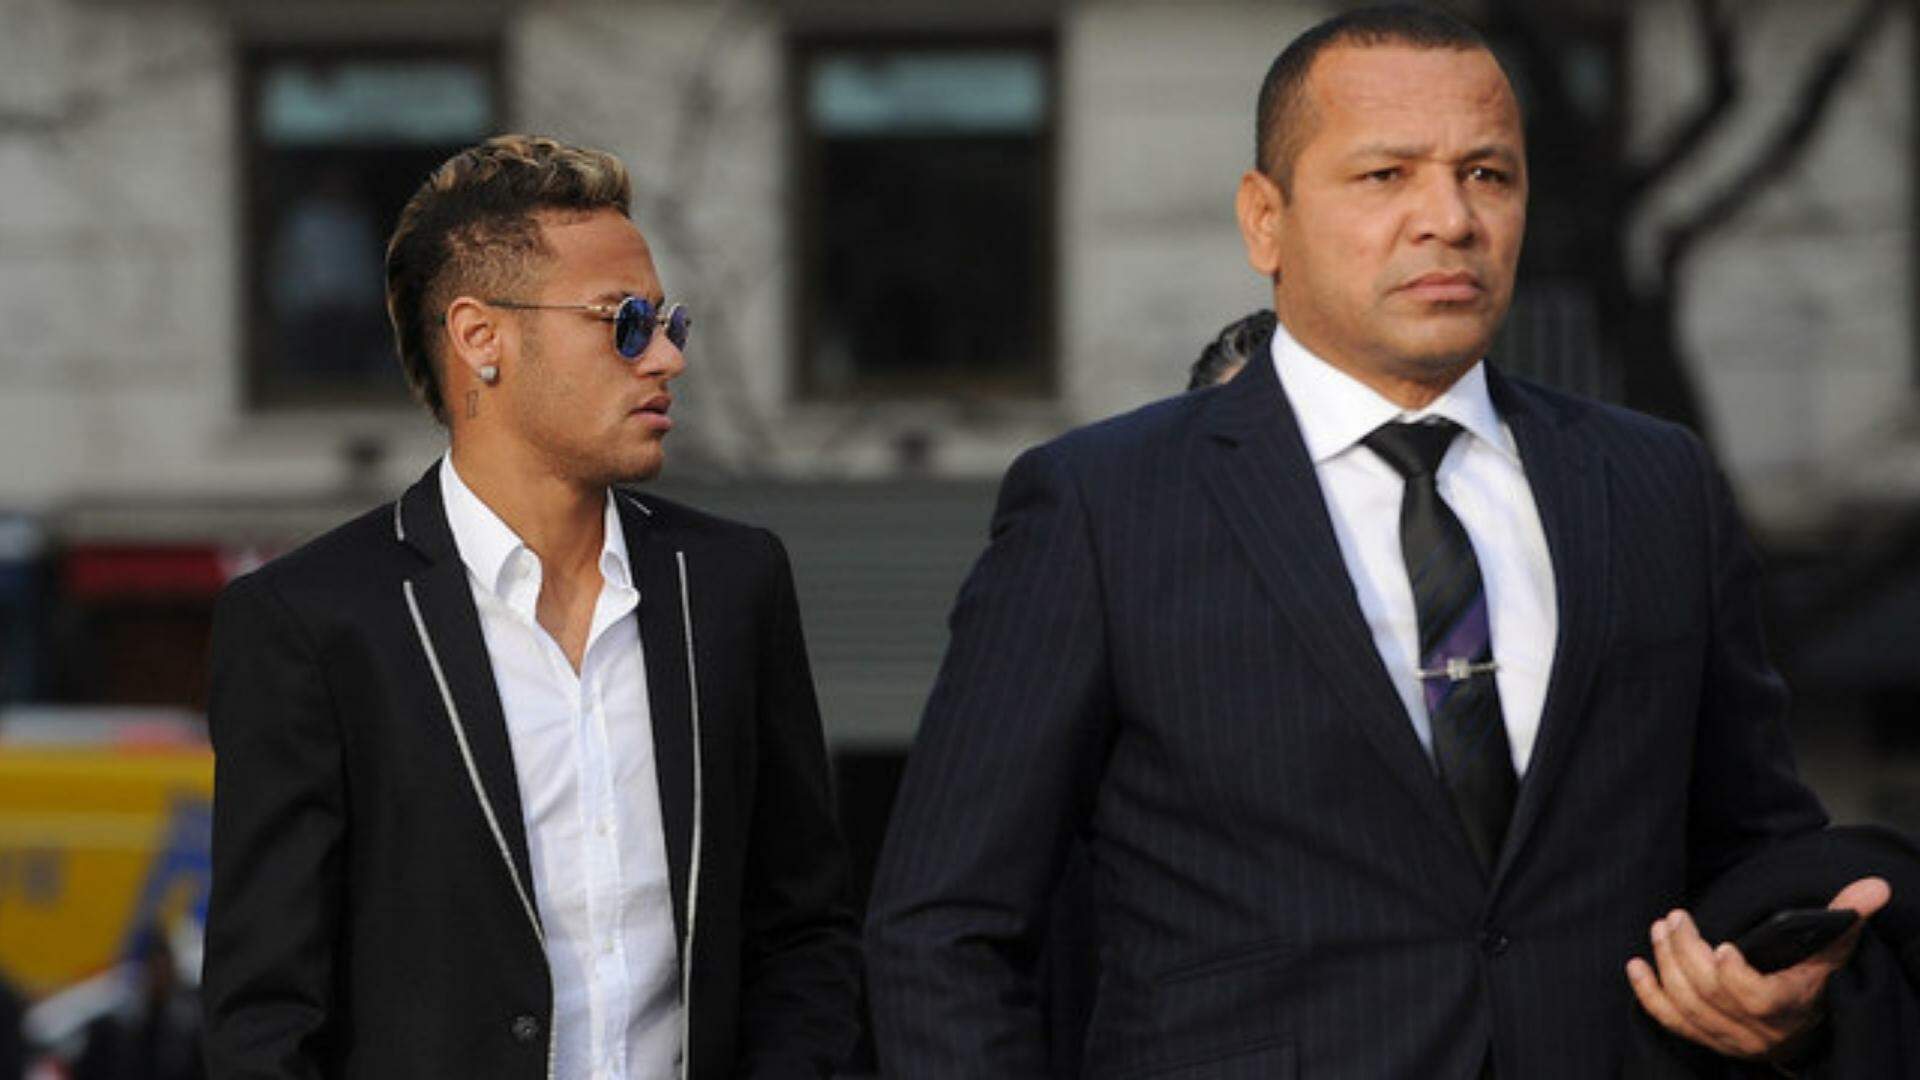 Pai de Neymar comemora vitória do filho no tribunal e desabafa: “Confiamos na justiça de Deus”